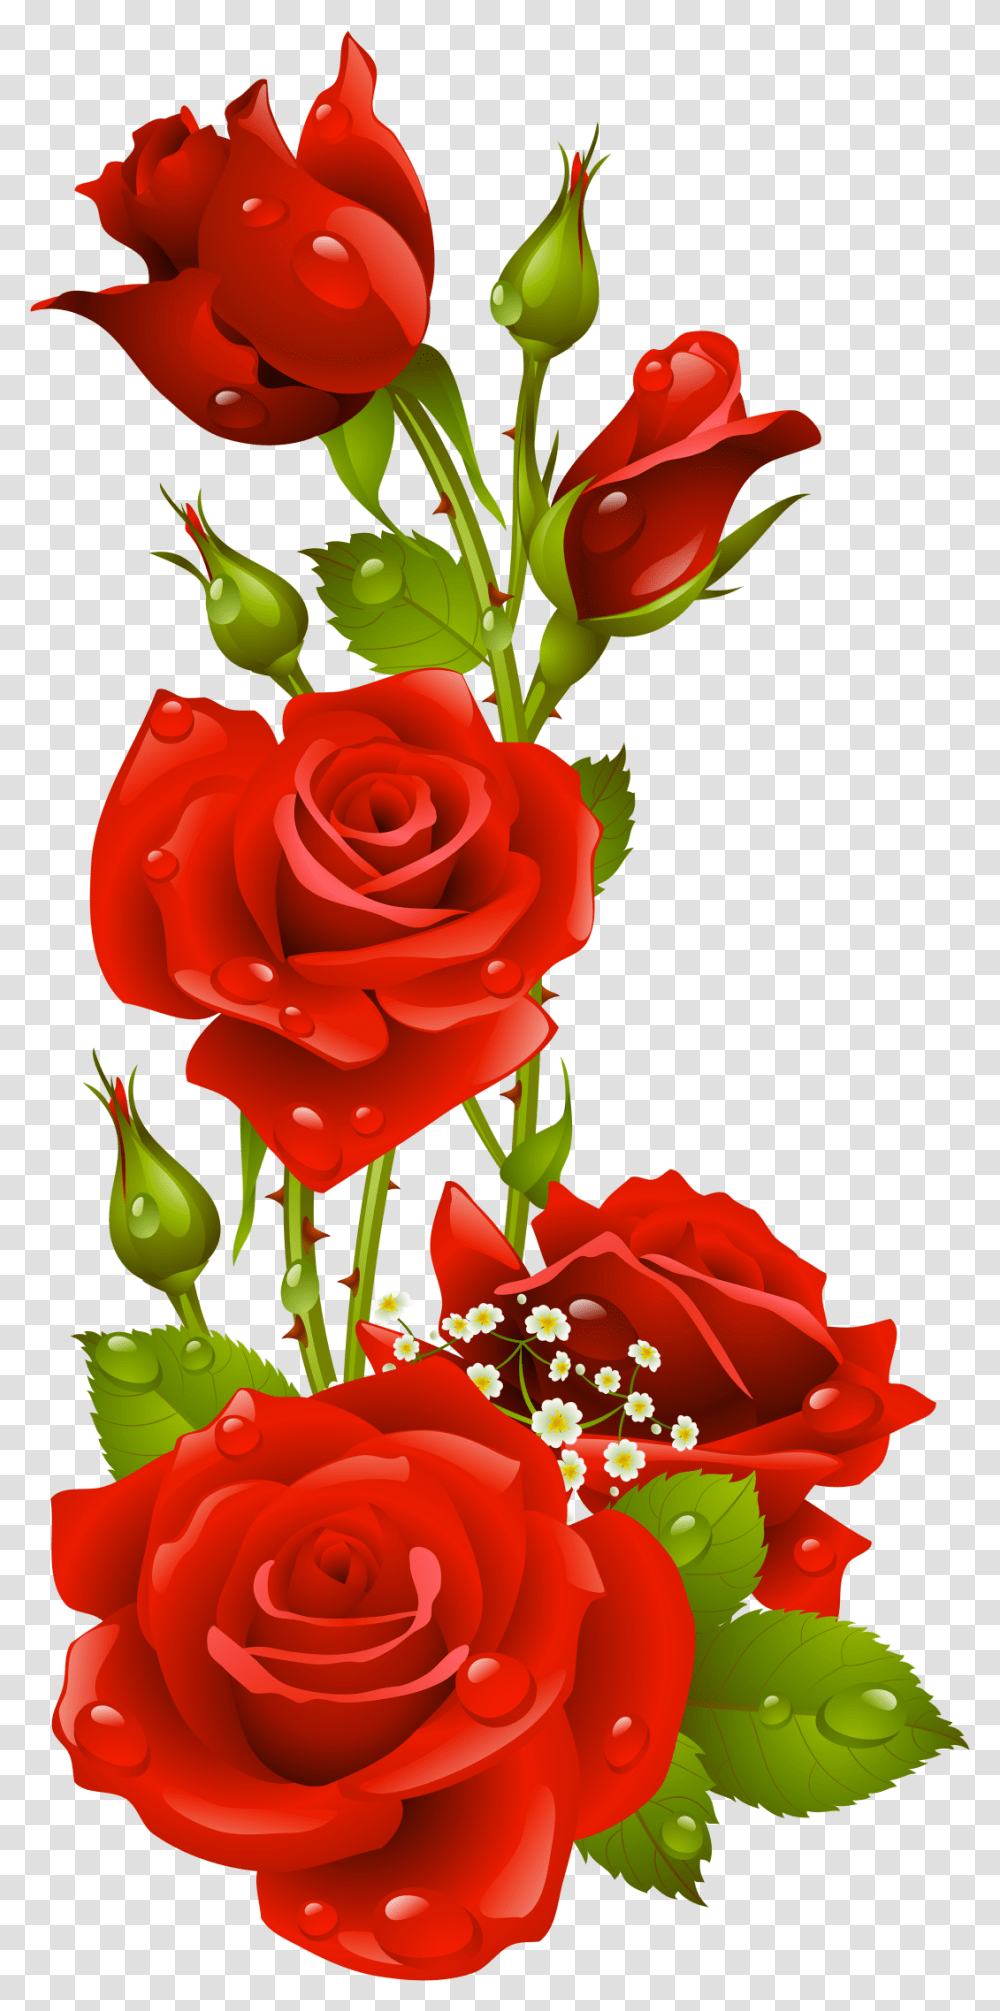 Papel De Carta Em Rosas Vermelhas, Rose, Flower, Plant, Blossom Transparent Png